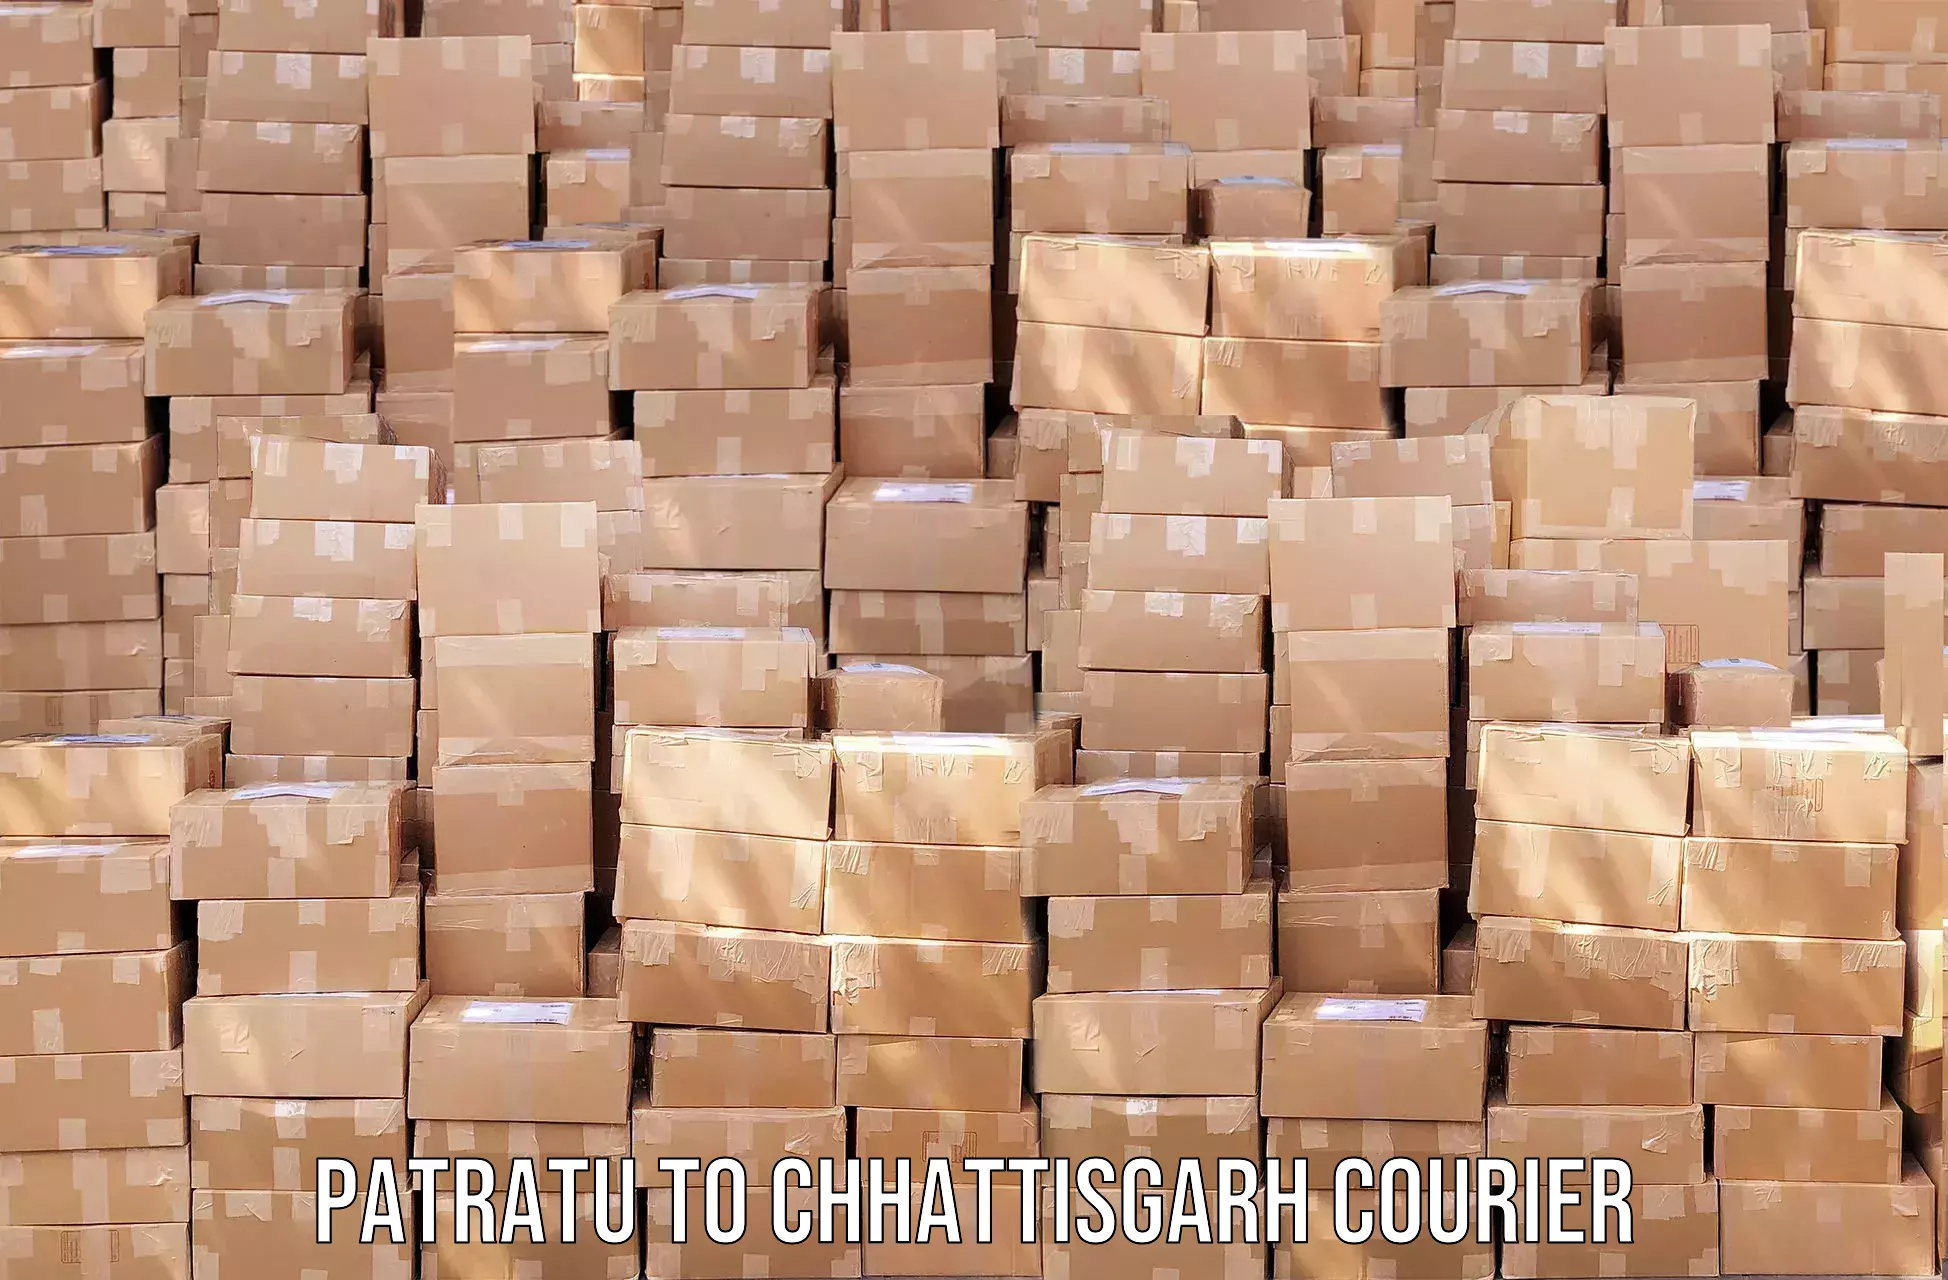 Courier service comparison Patratu to Narayanpur